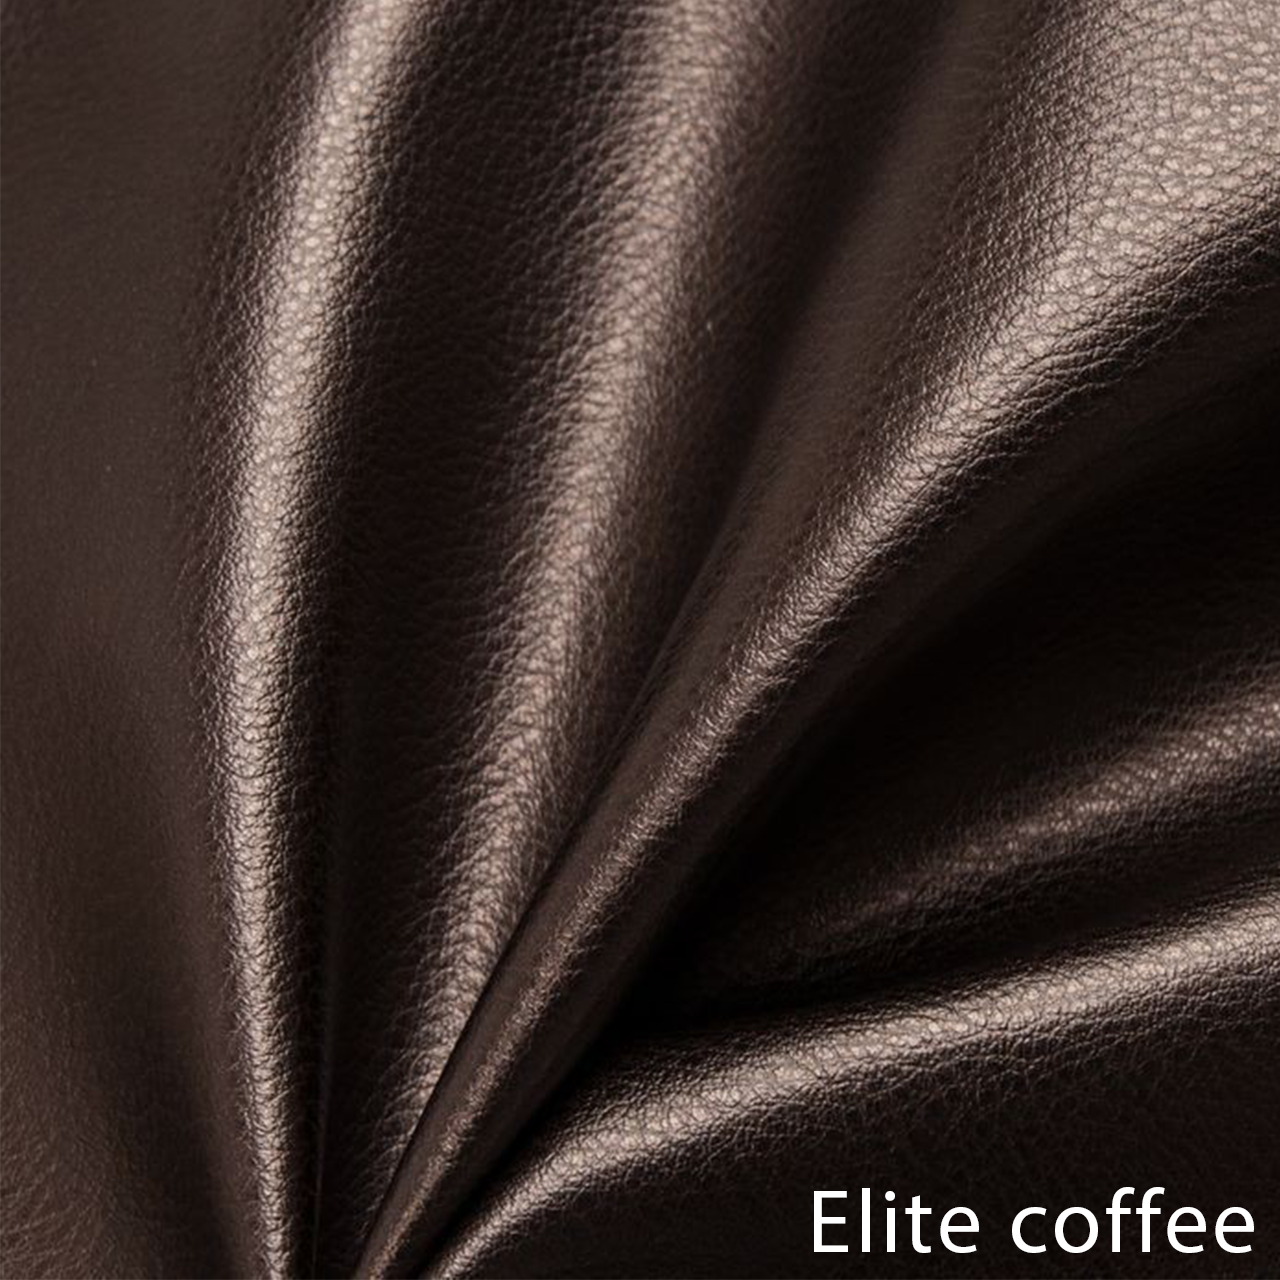 Elite coffee